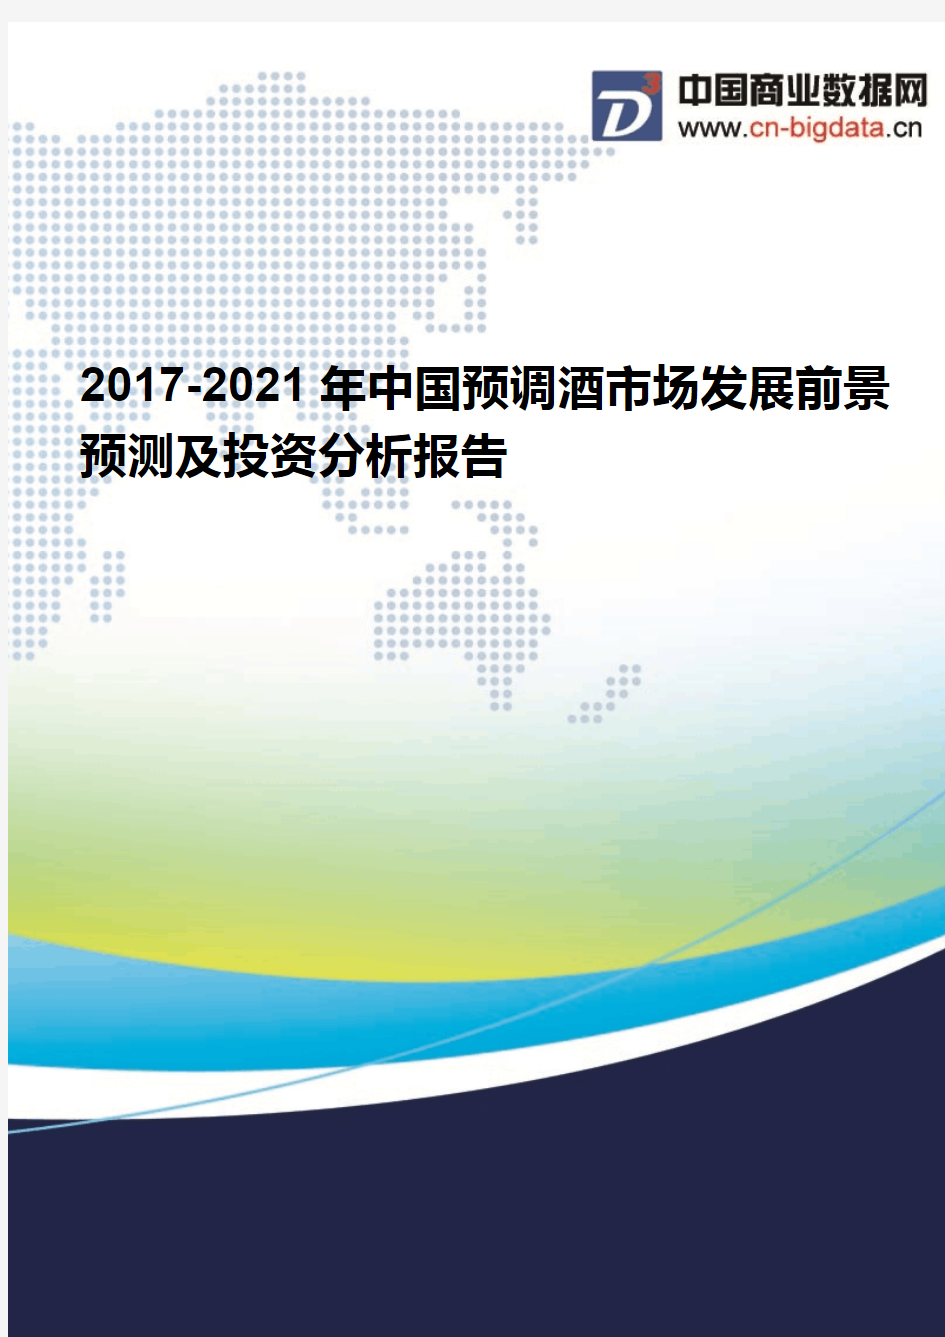 2017-2021年中国预调酒市场发展前景预测及投资分析报告